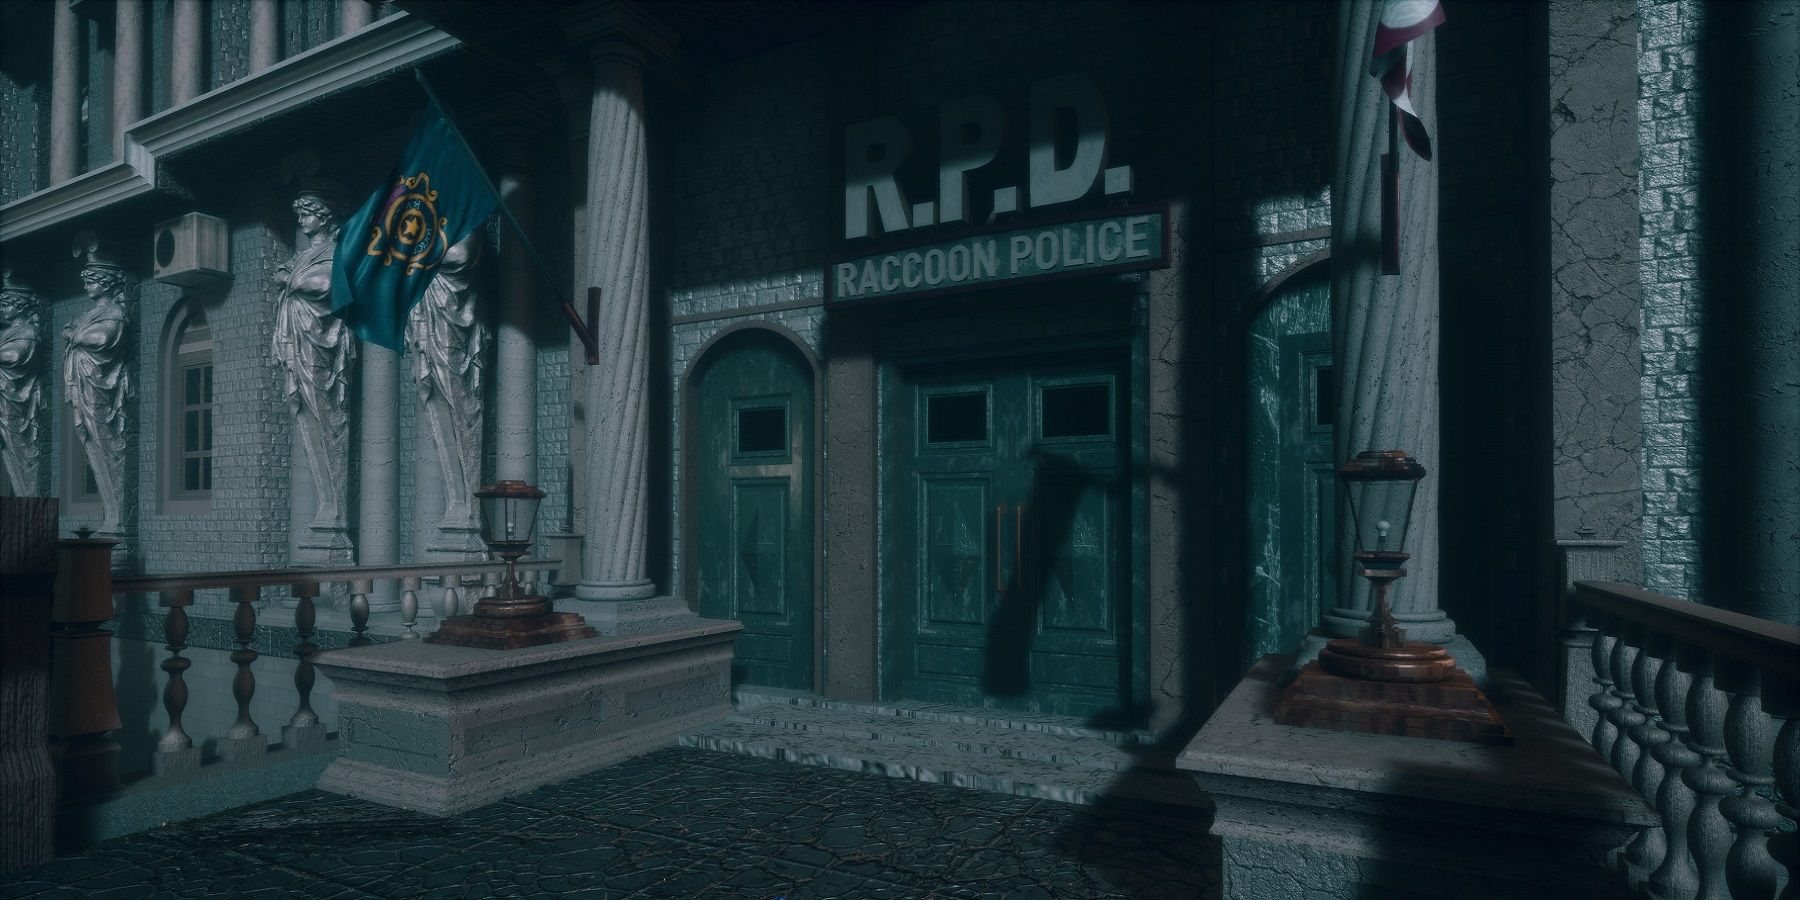 Изображение из фанатского ремейка Resident Evil 3 Unreal Engine, показывающее внешний вид полицейского управления Ракуна.